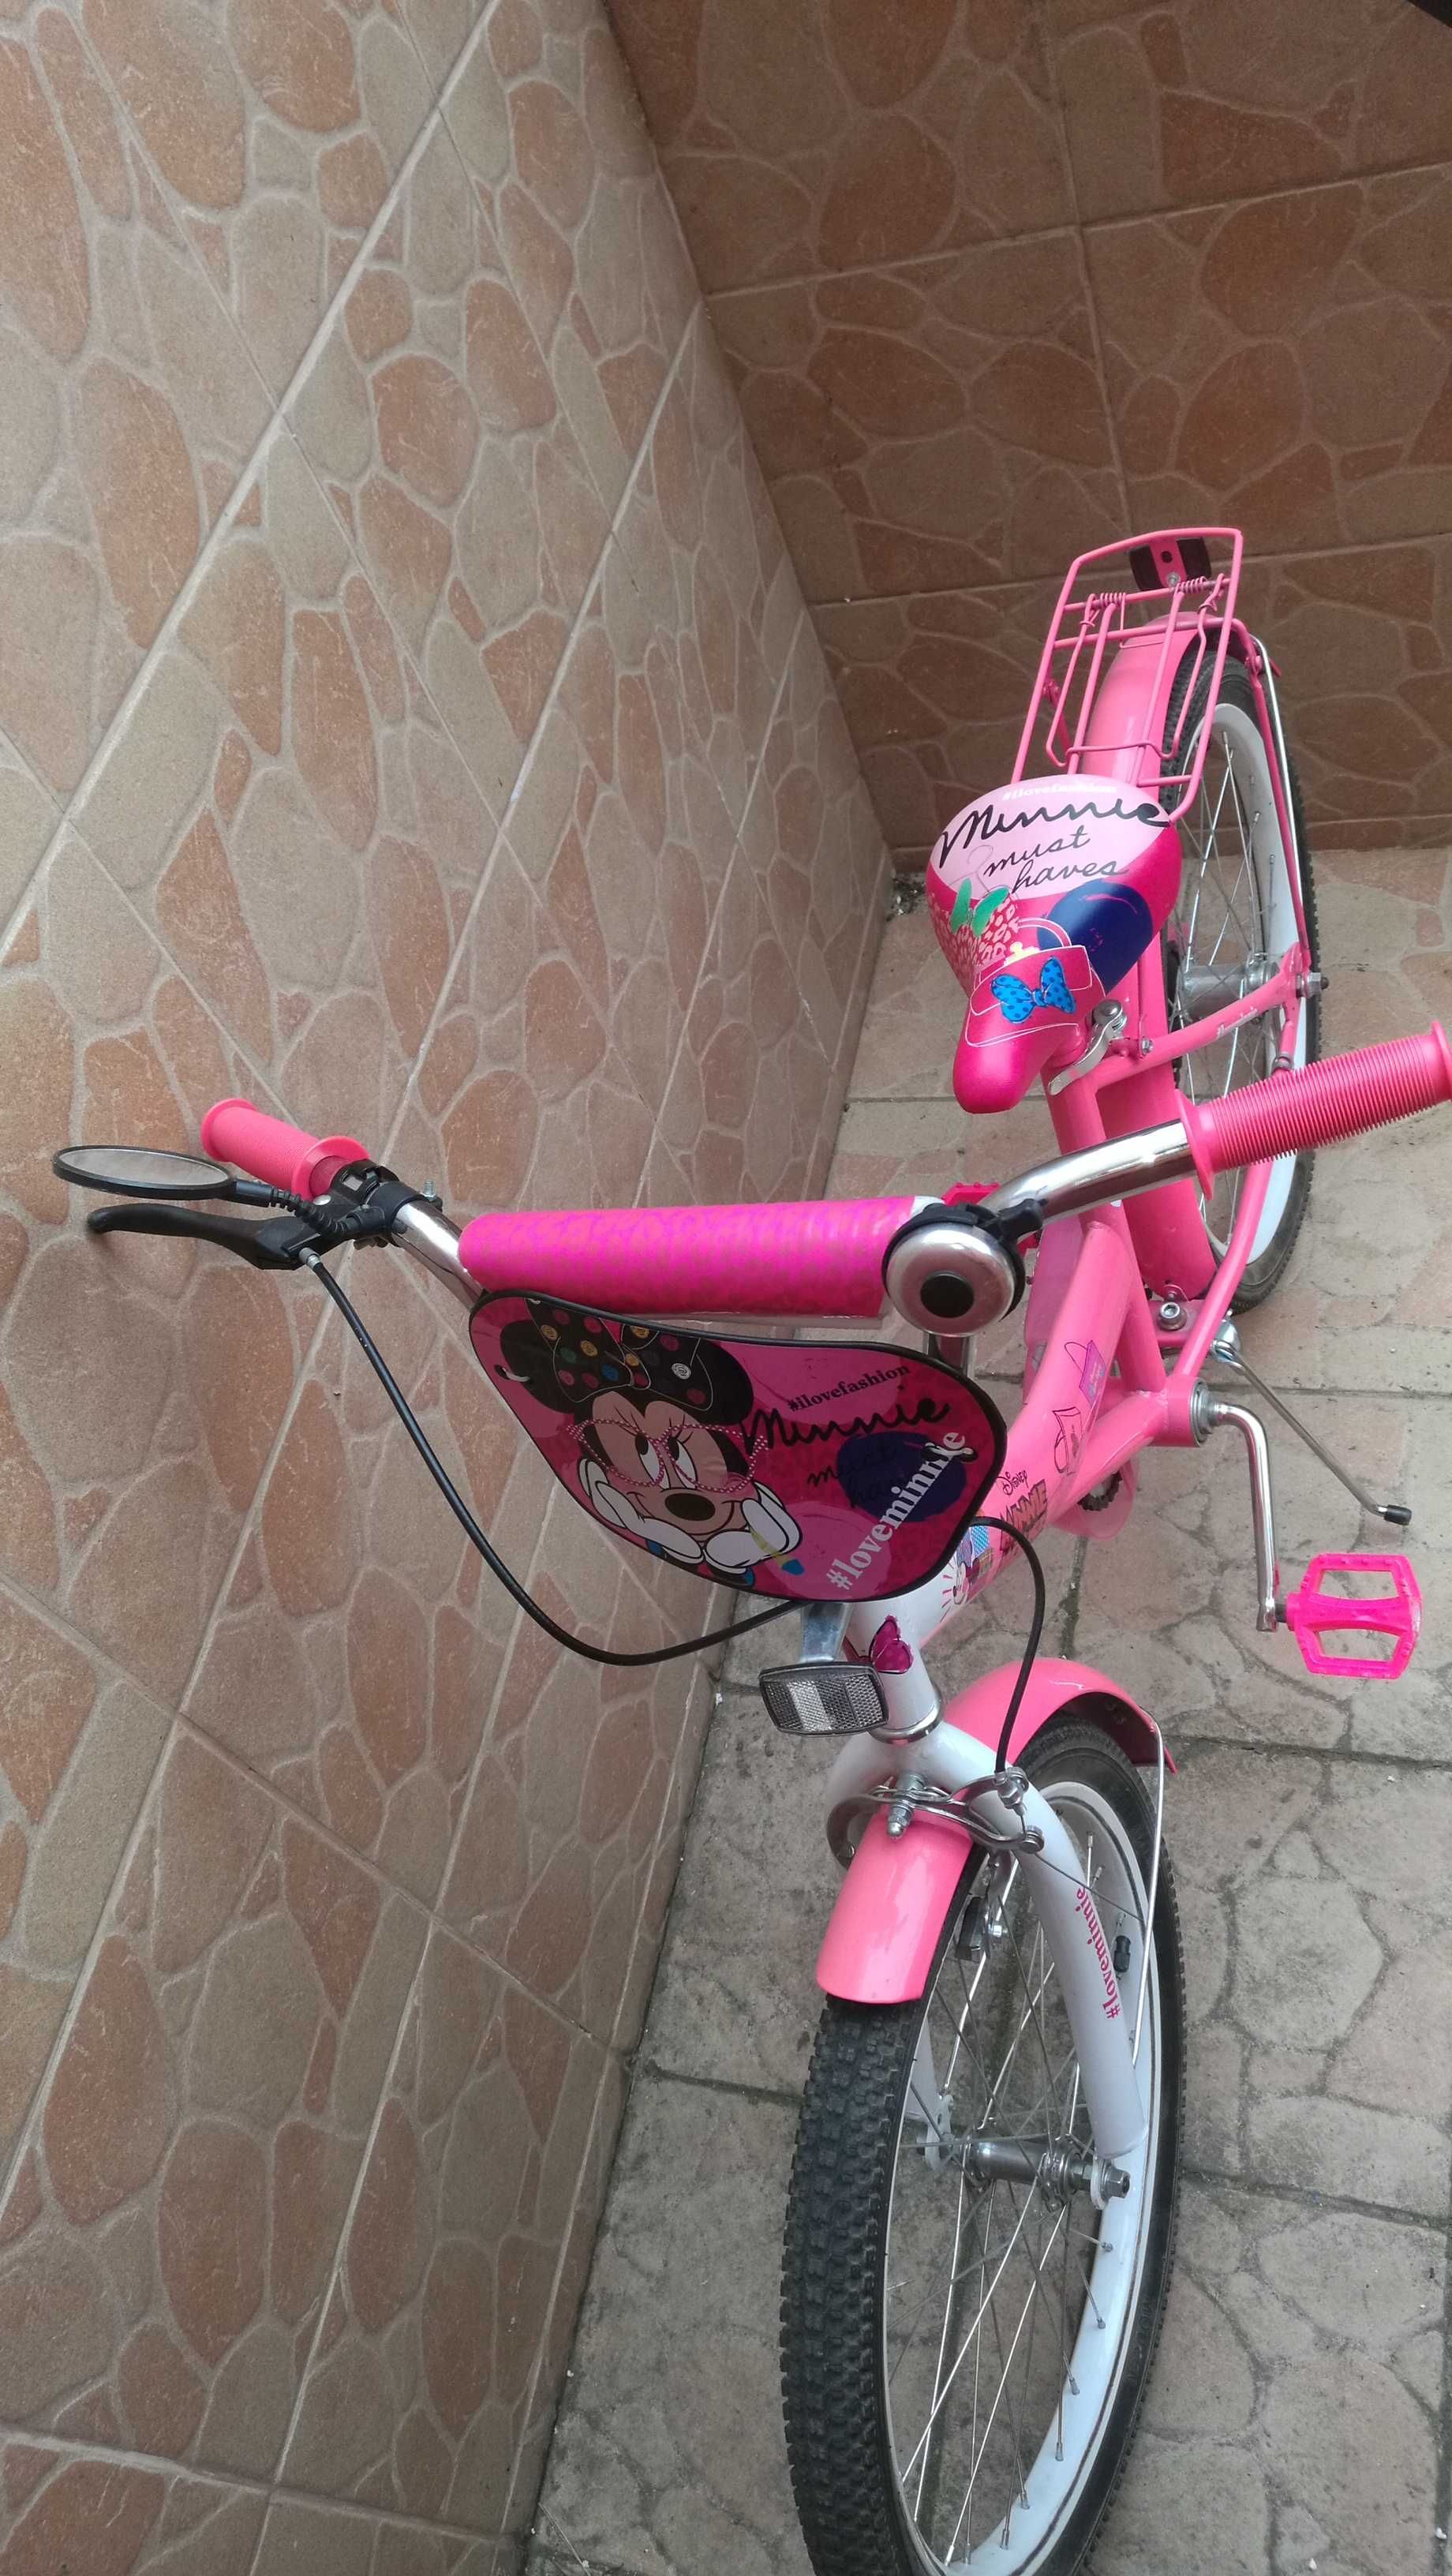 Велосипед Детский ( для девочки )